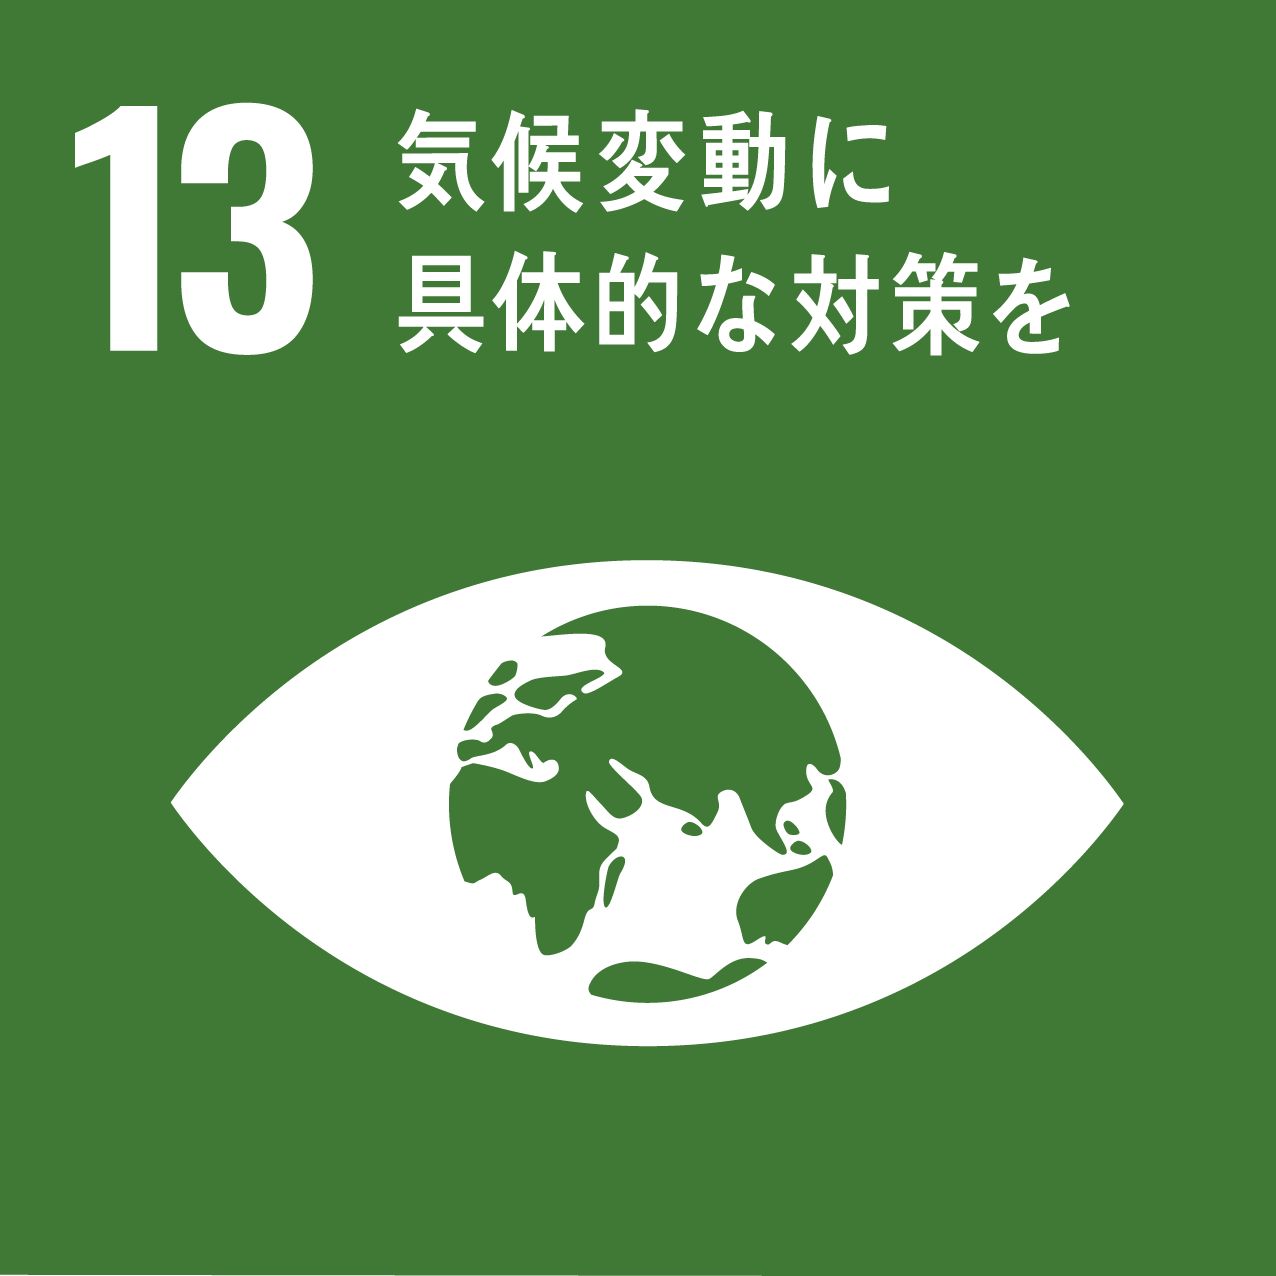 日南町と日南町産業振興センターが目指す、SDGs13のロゴ